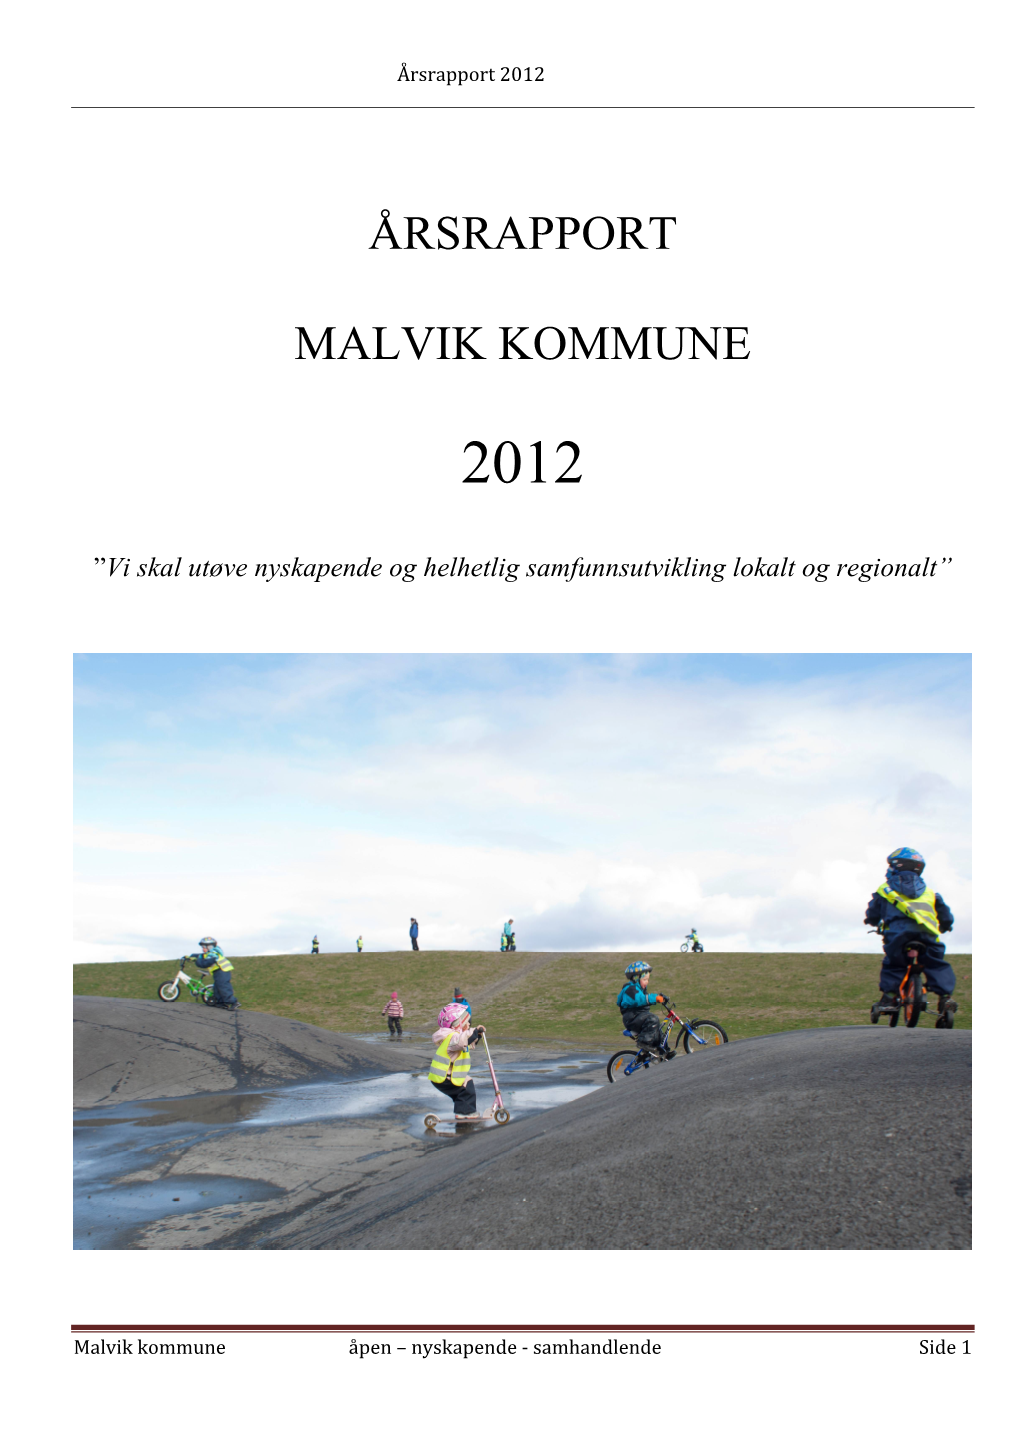 Årsrapport Malvik Kommune